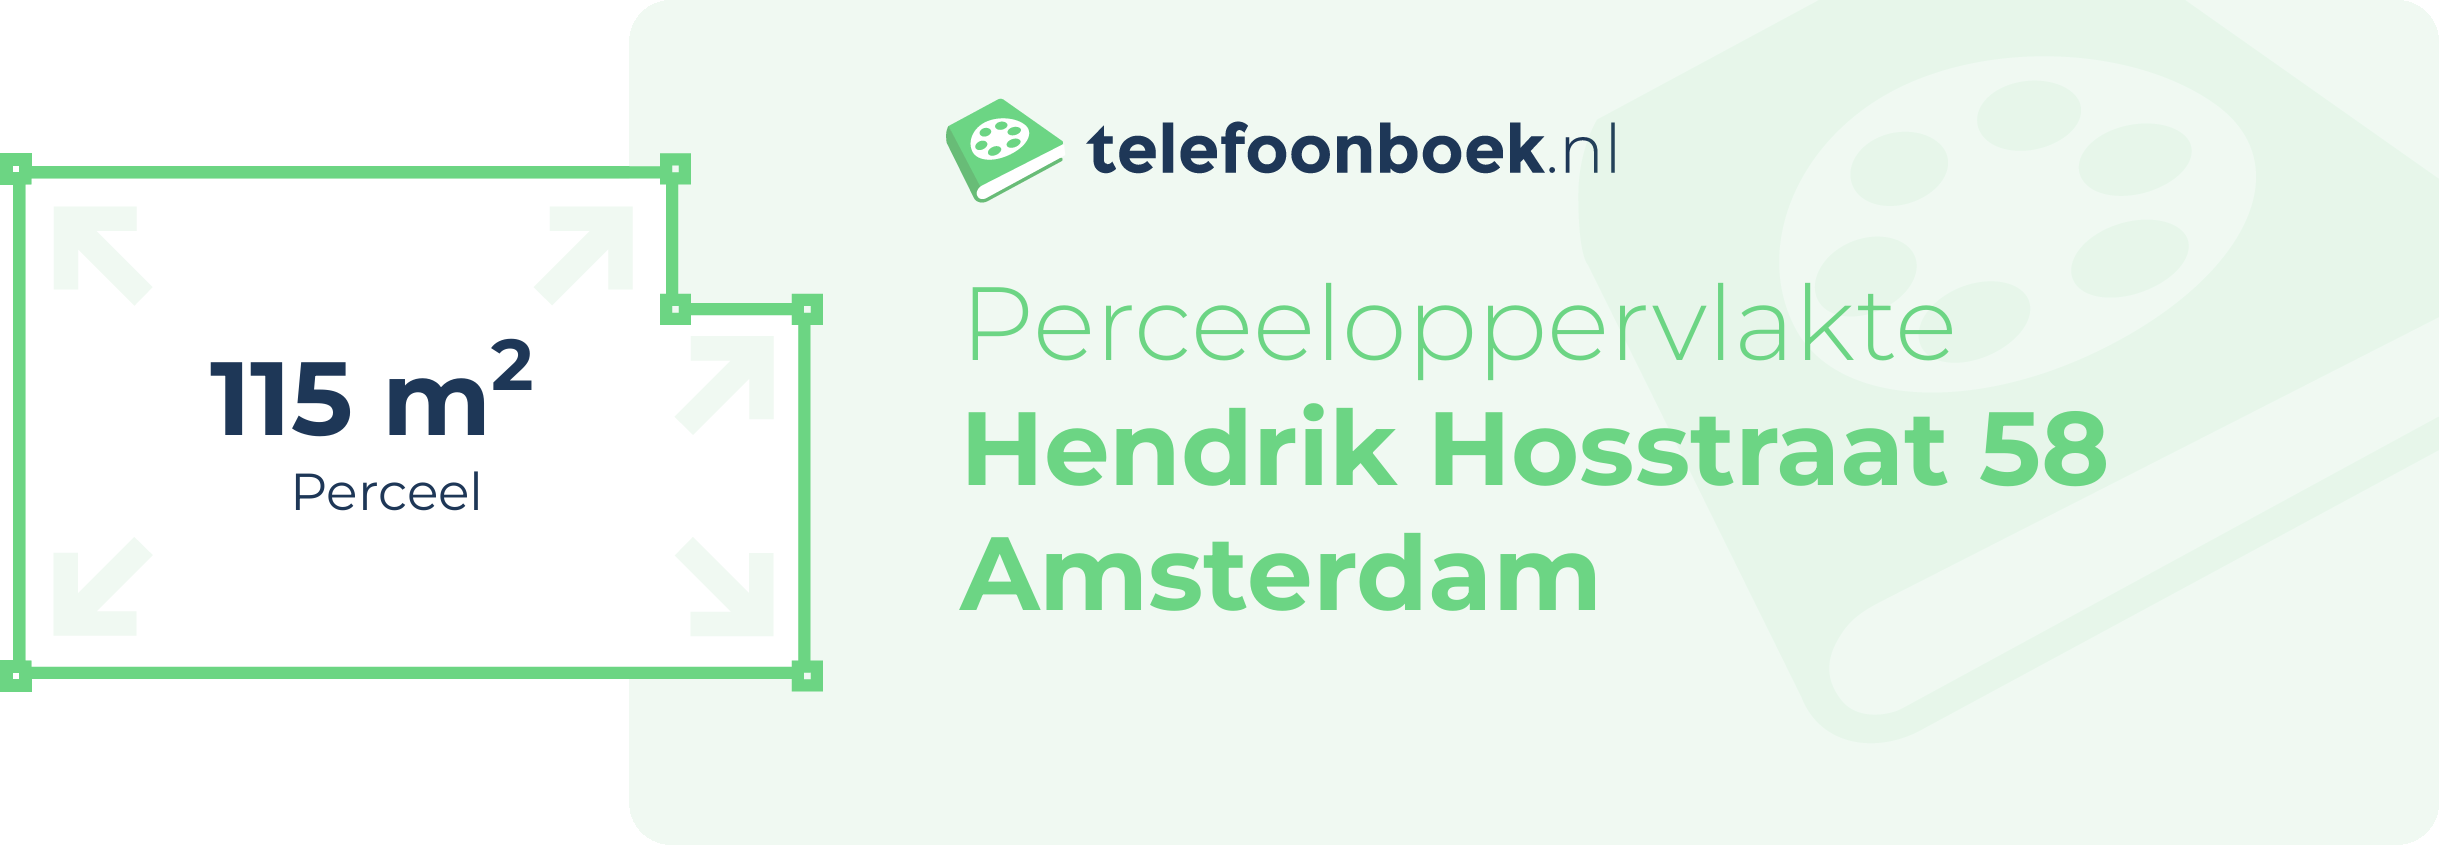 Perceeloppervlakte Hendrik Hosstraat 58 Amsterdam